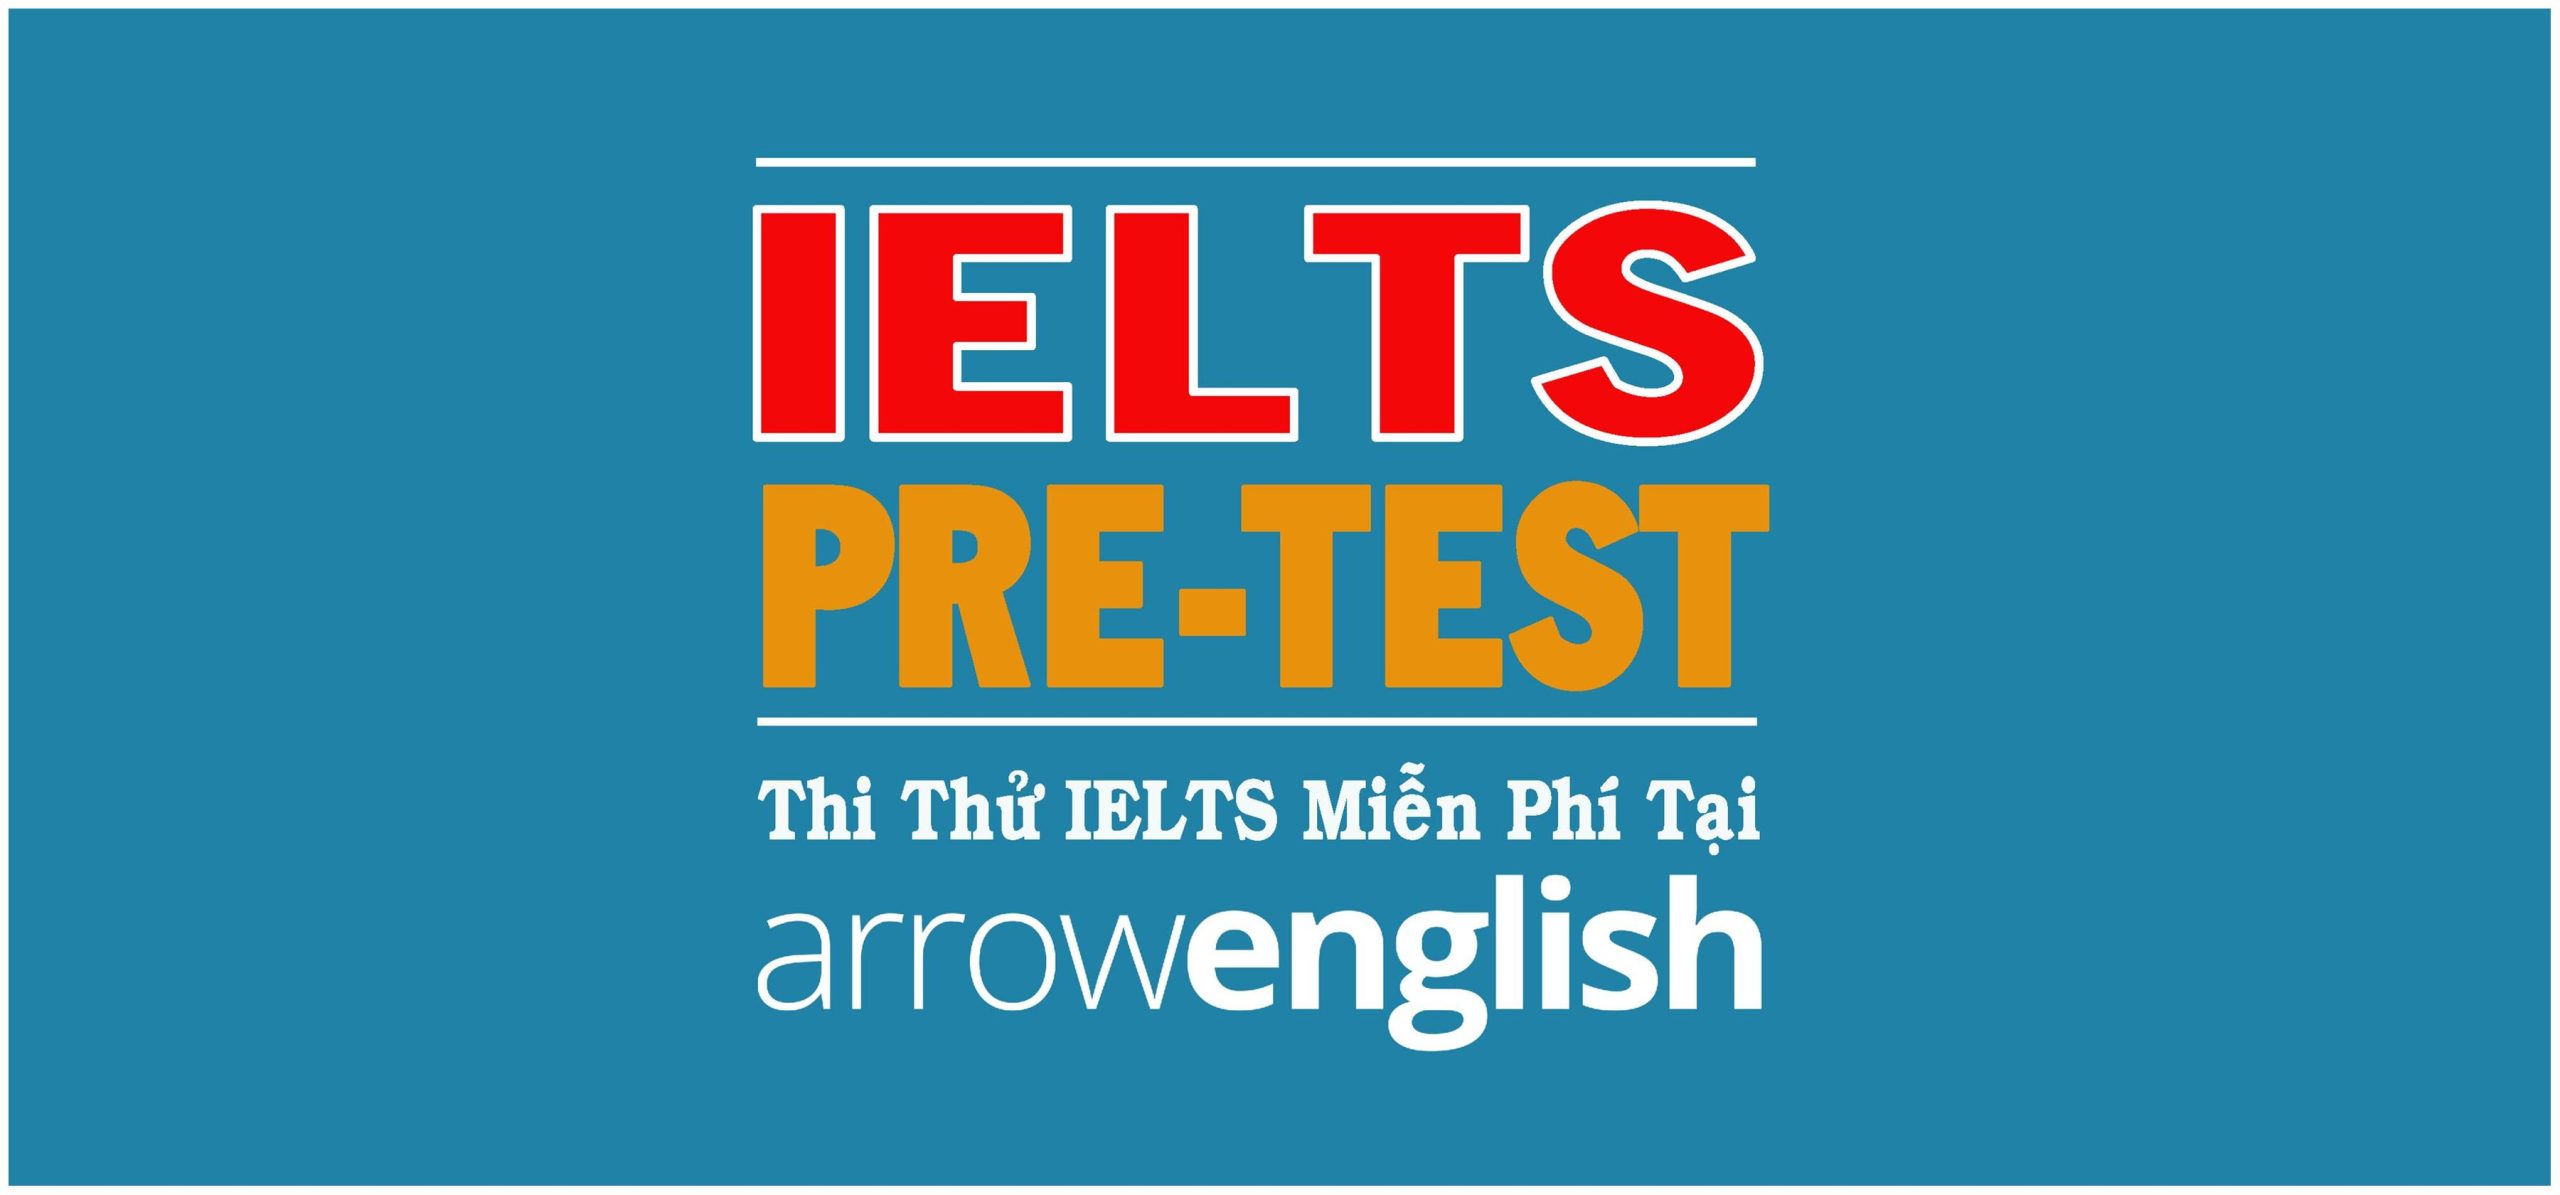 Thi thử IELTS tại ArrowEnglish với Đề thi chính thức từ Cambridge